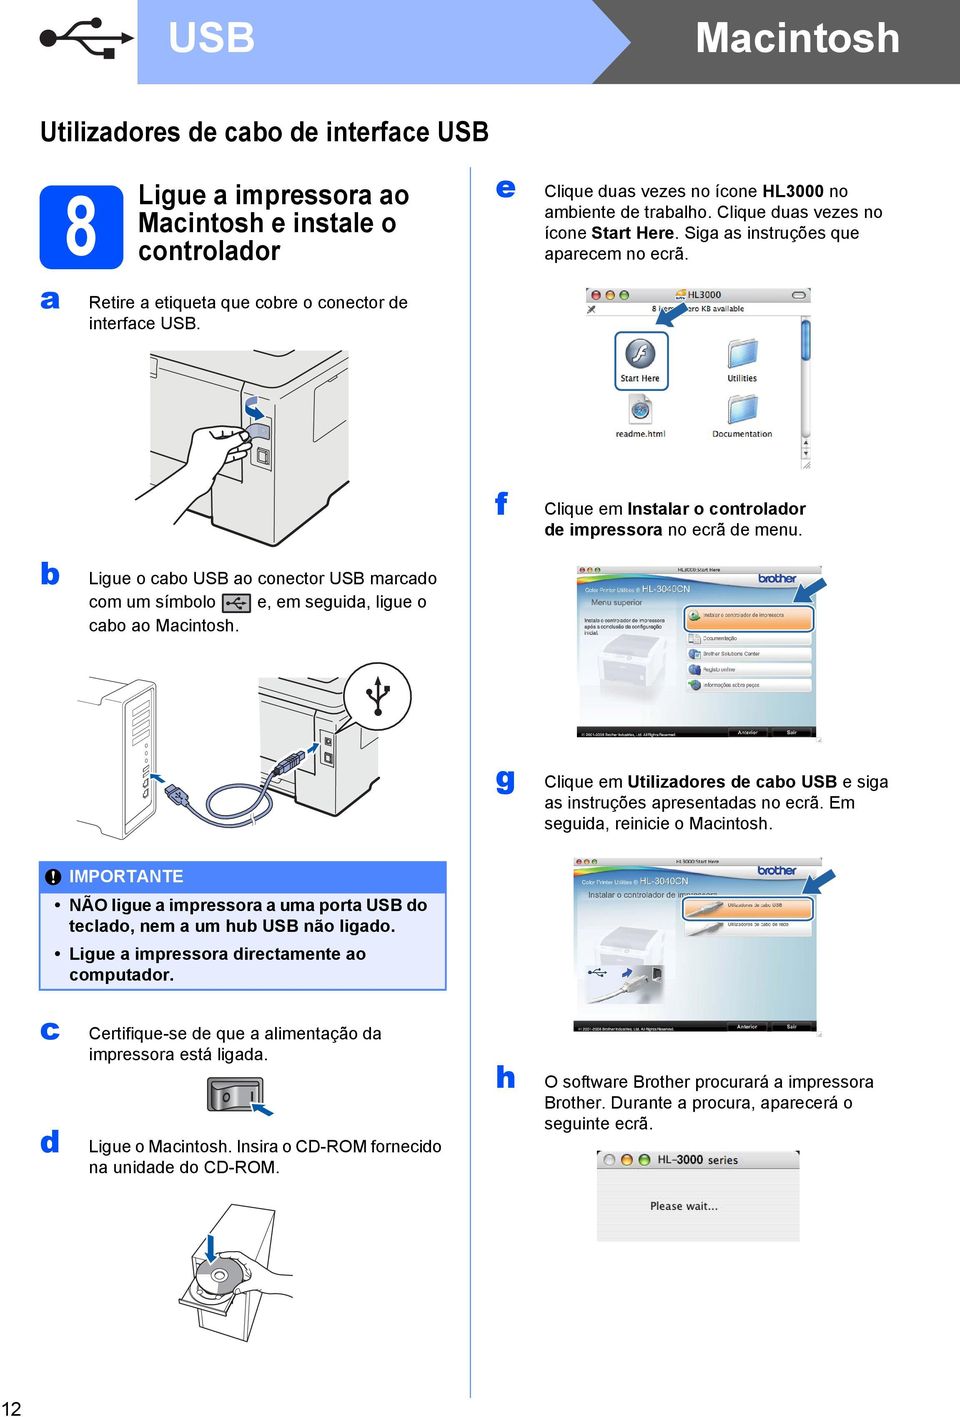 f Clique em Instalar o controlador de impressora no ecrã de menu. b Ligue o cabo USB ao conector USB marcado com um símbolo e, em seguida, ligue o cabo ao Macintosh.